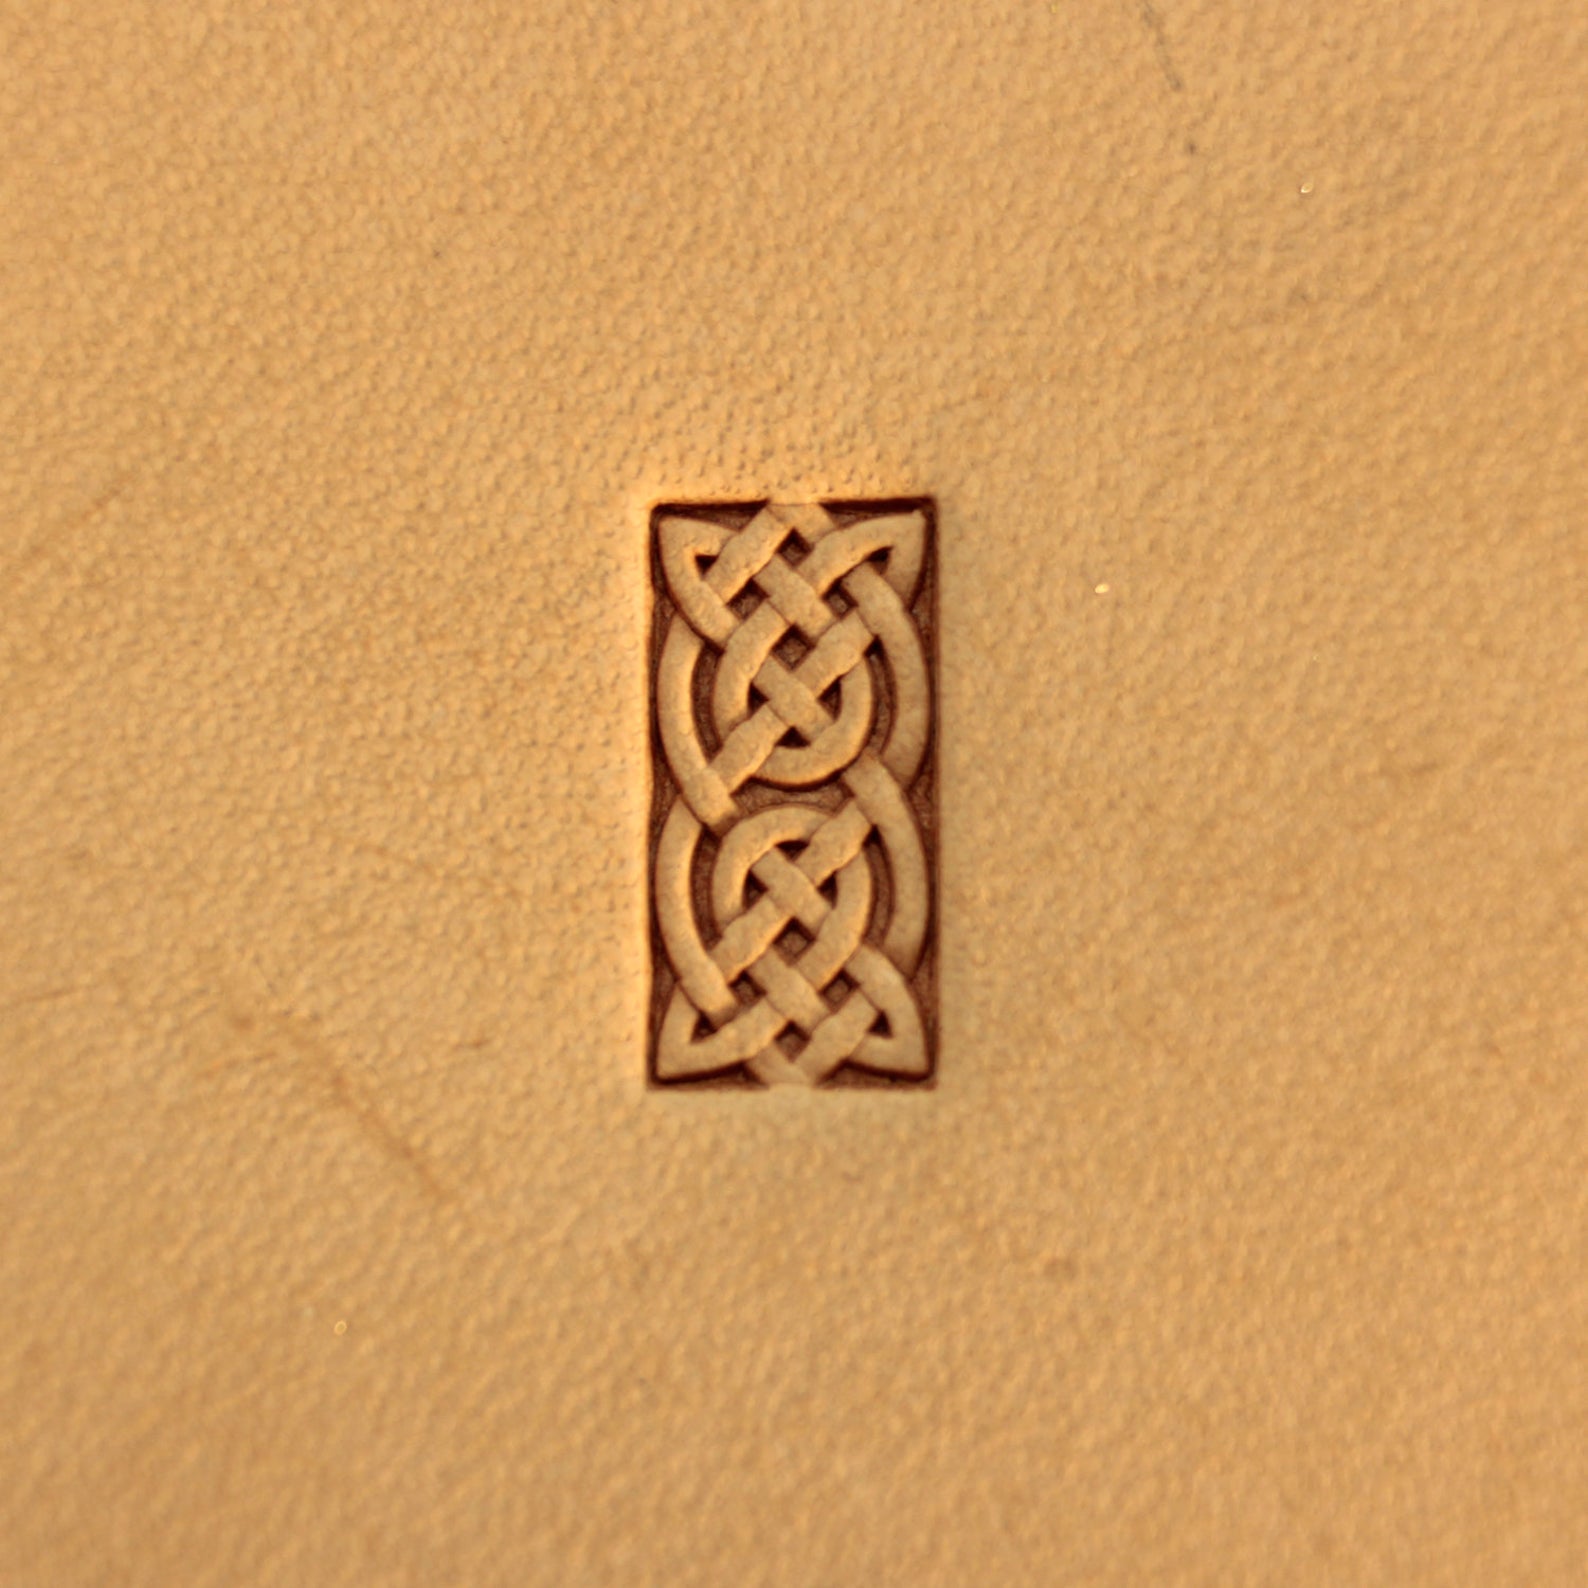 Leather stamp tool #242 - SpasGoranov